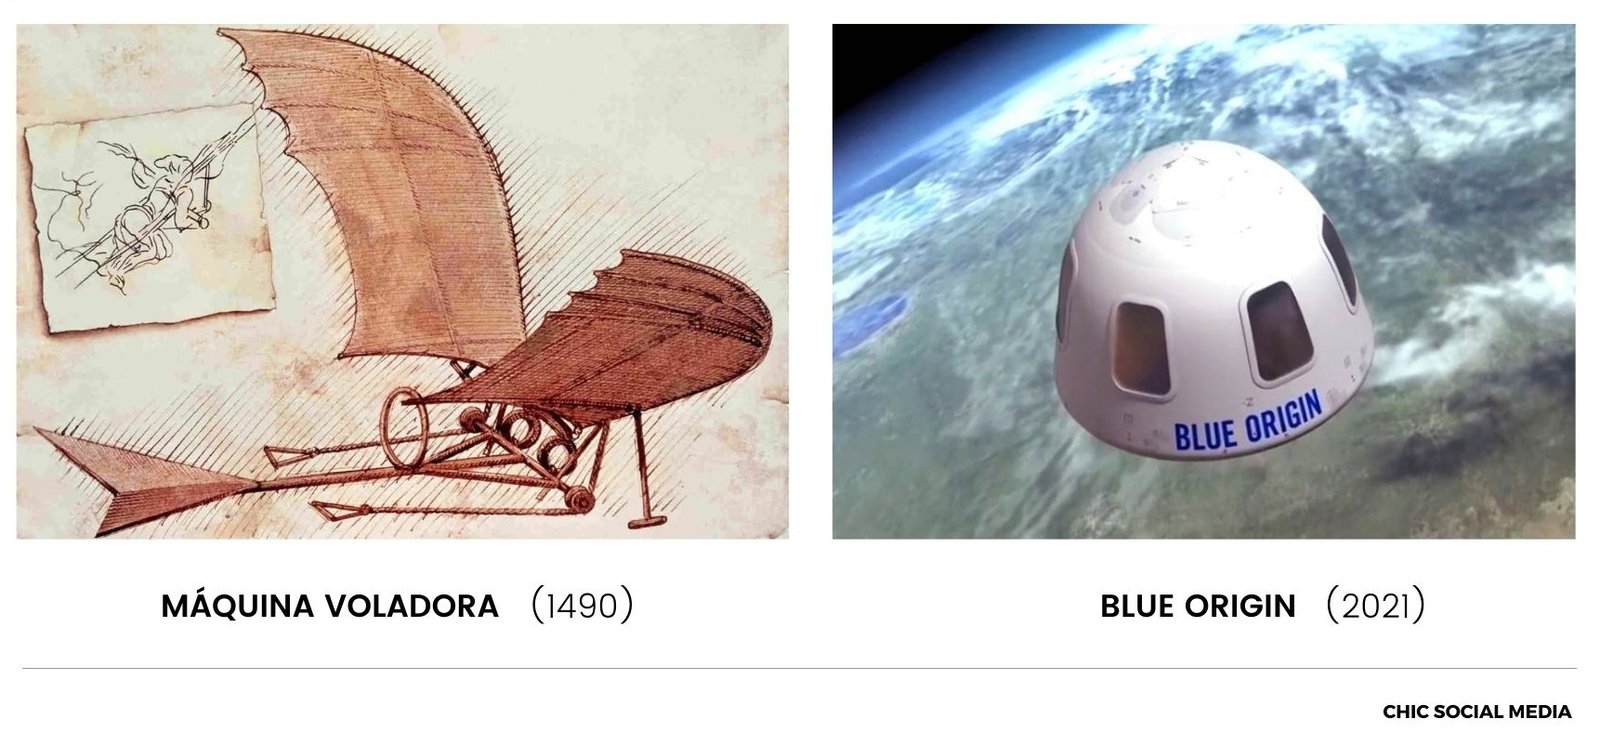 Comparación entre una máquina voladora medieval y el Blue Origen de Jeff Bezos.